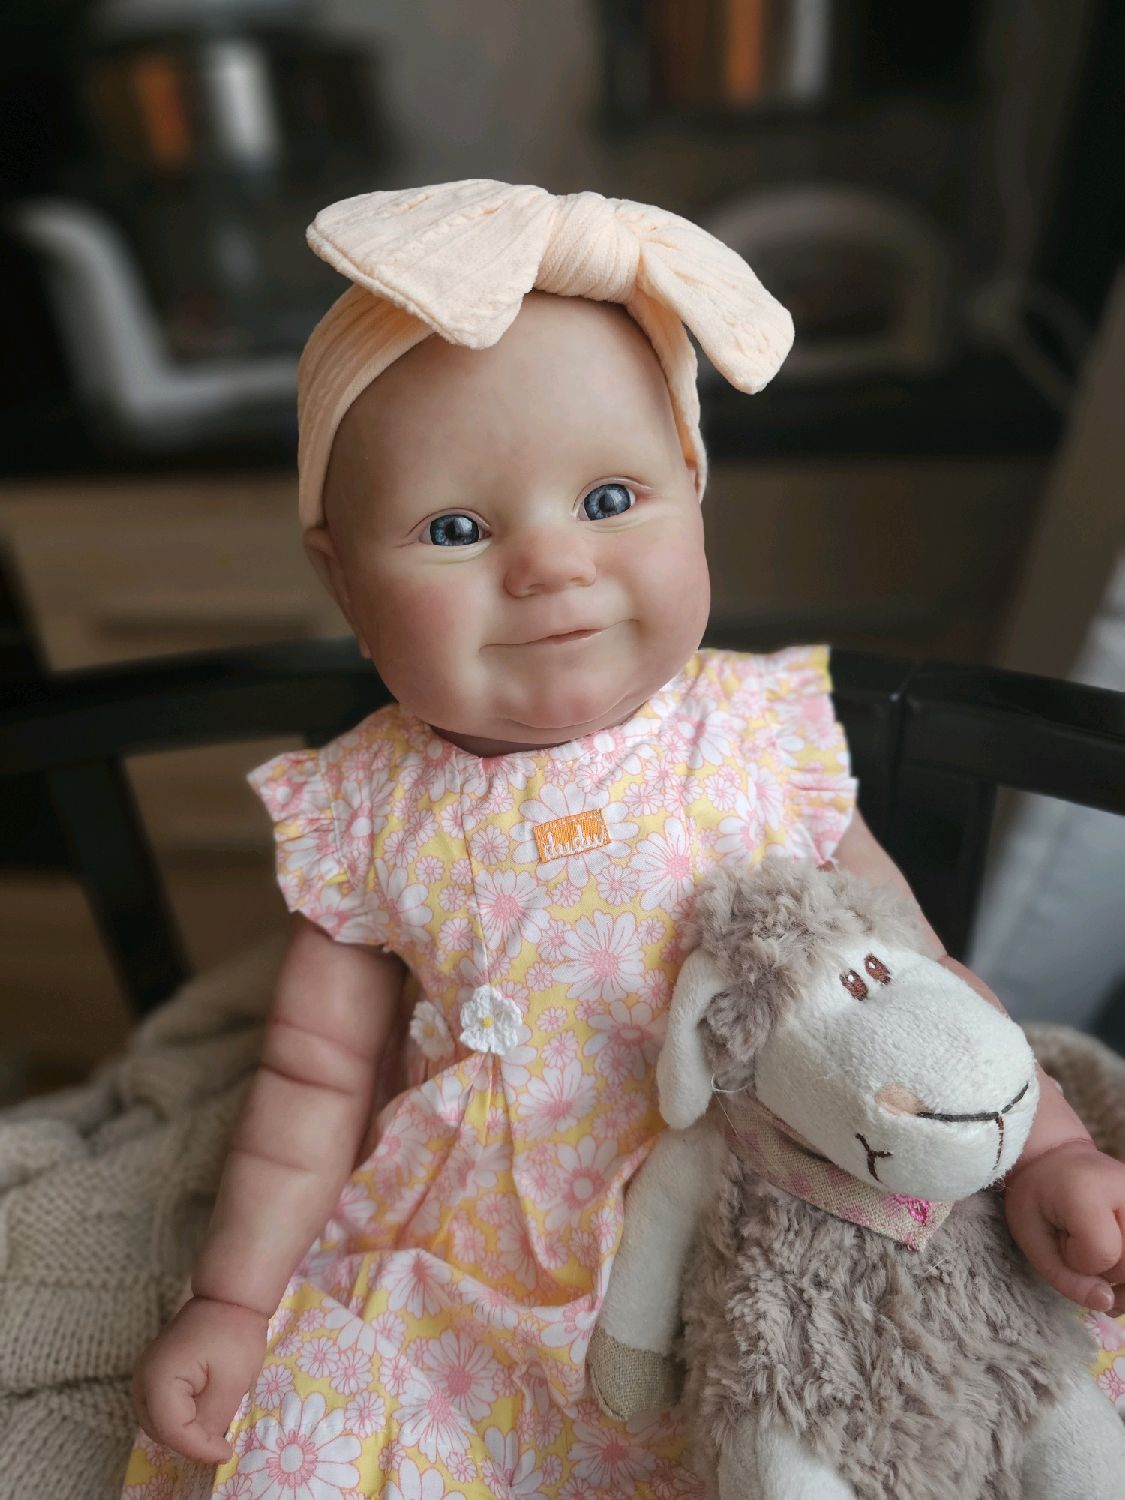 Почему так пугают и при этом пользуются популярностью куклы реборн - точные копии младенцев